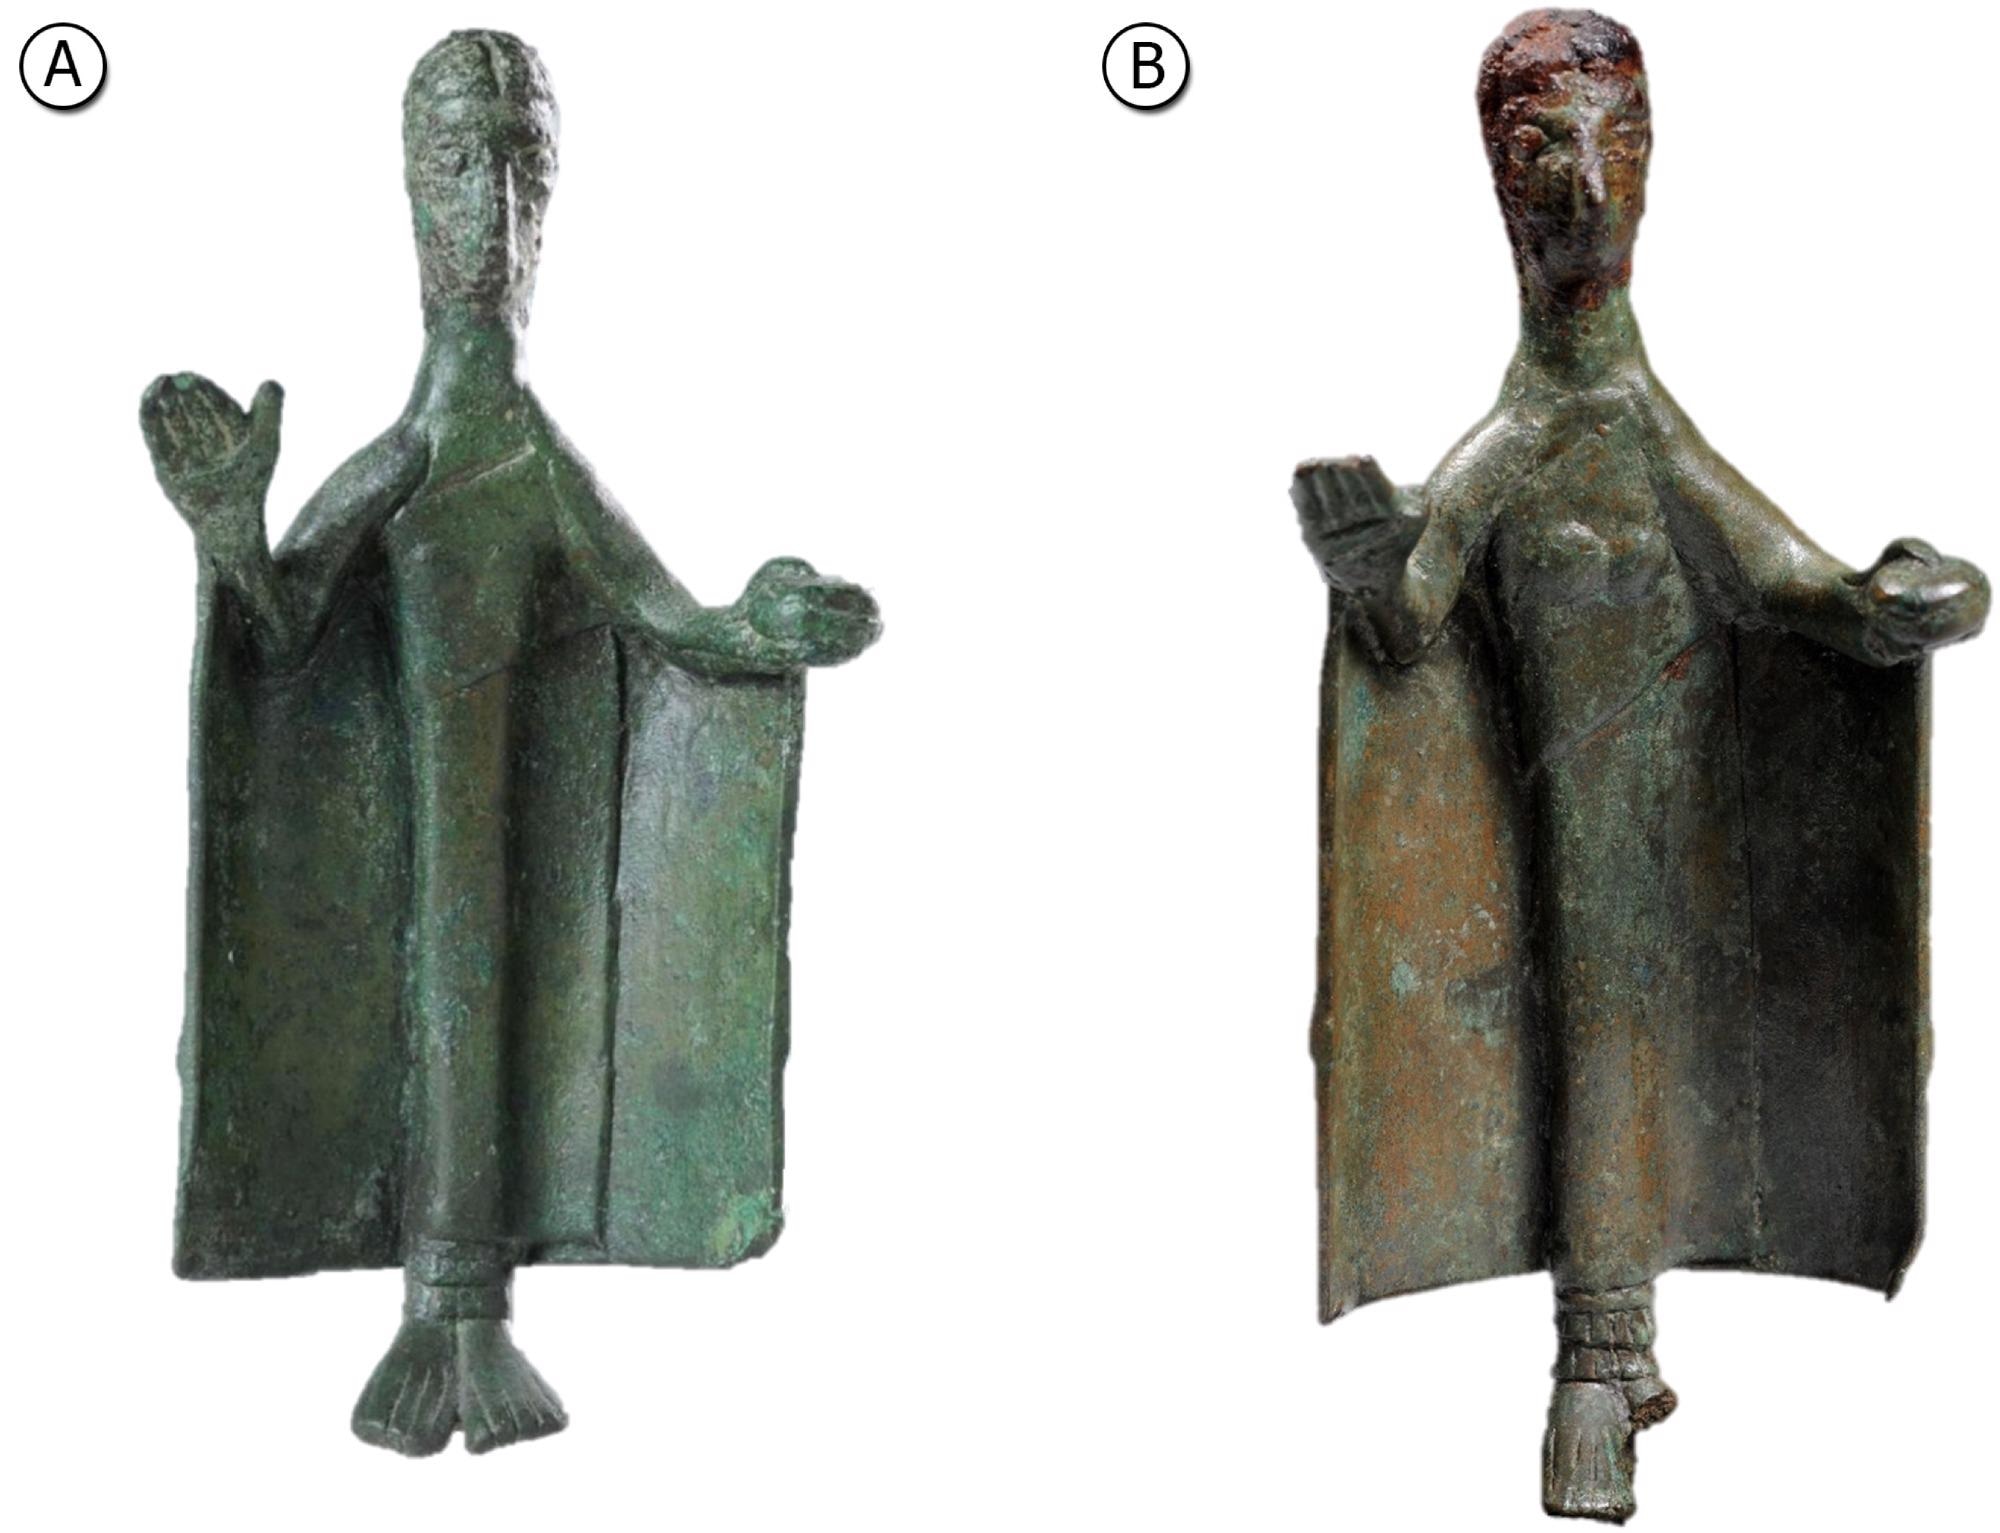 Bronze statuettes: (A) Pigorini Museum (#26065) and (B) Musei Reali Museum (#783).